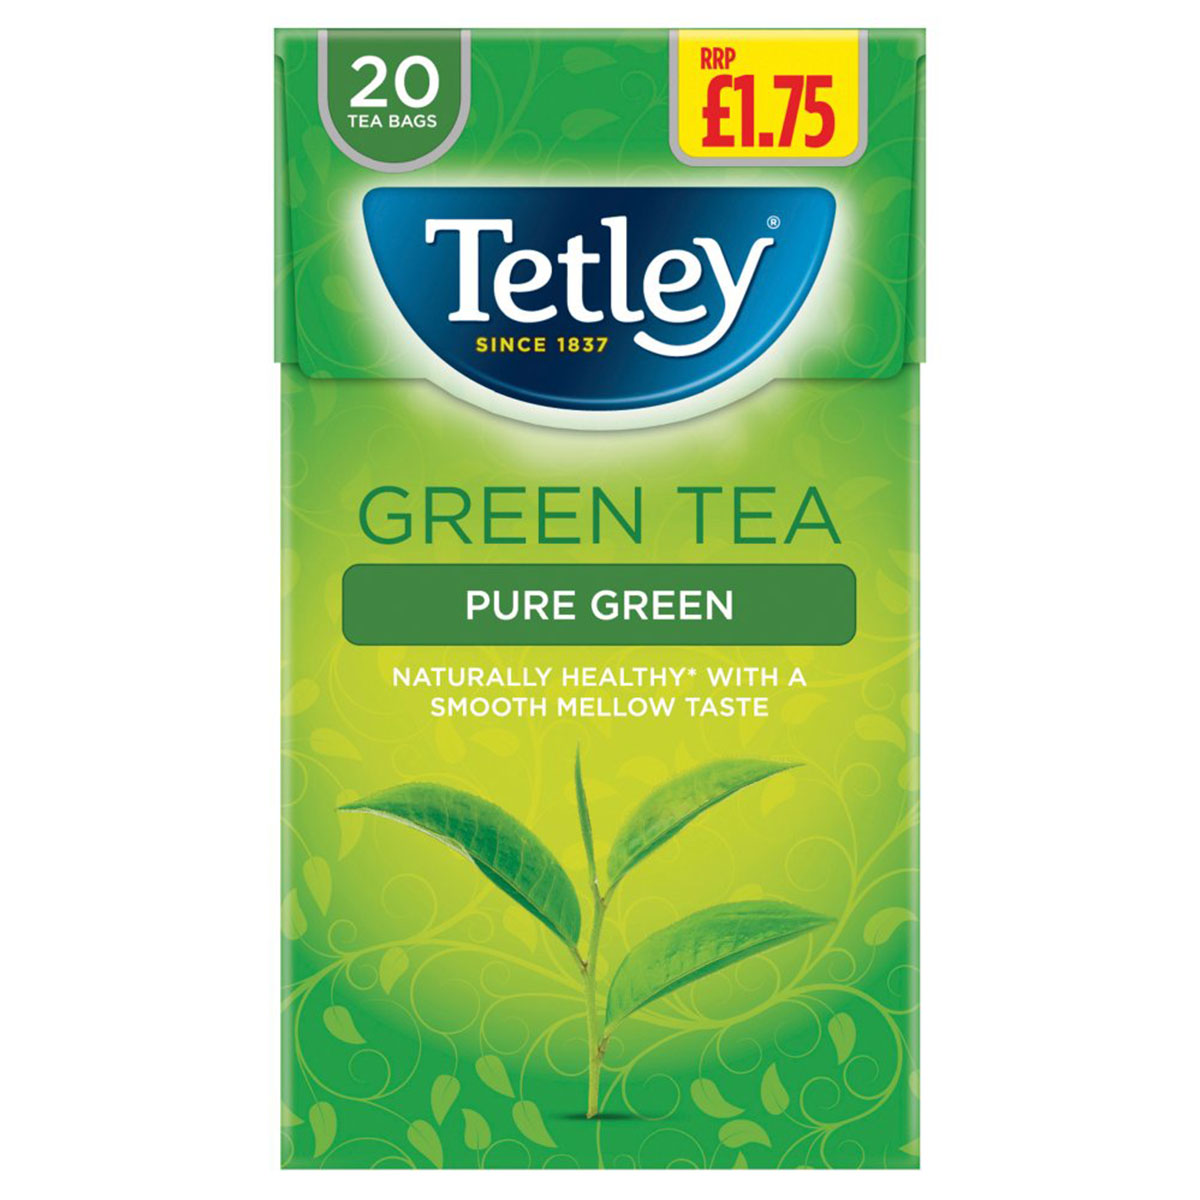 Tetley - Pure Green Green Tea 20 Tea Bags - 40g - Continental Food Store